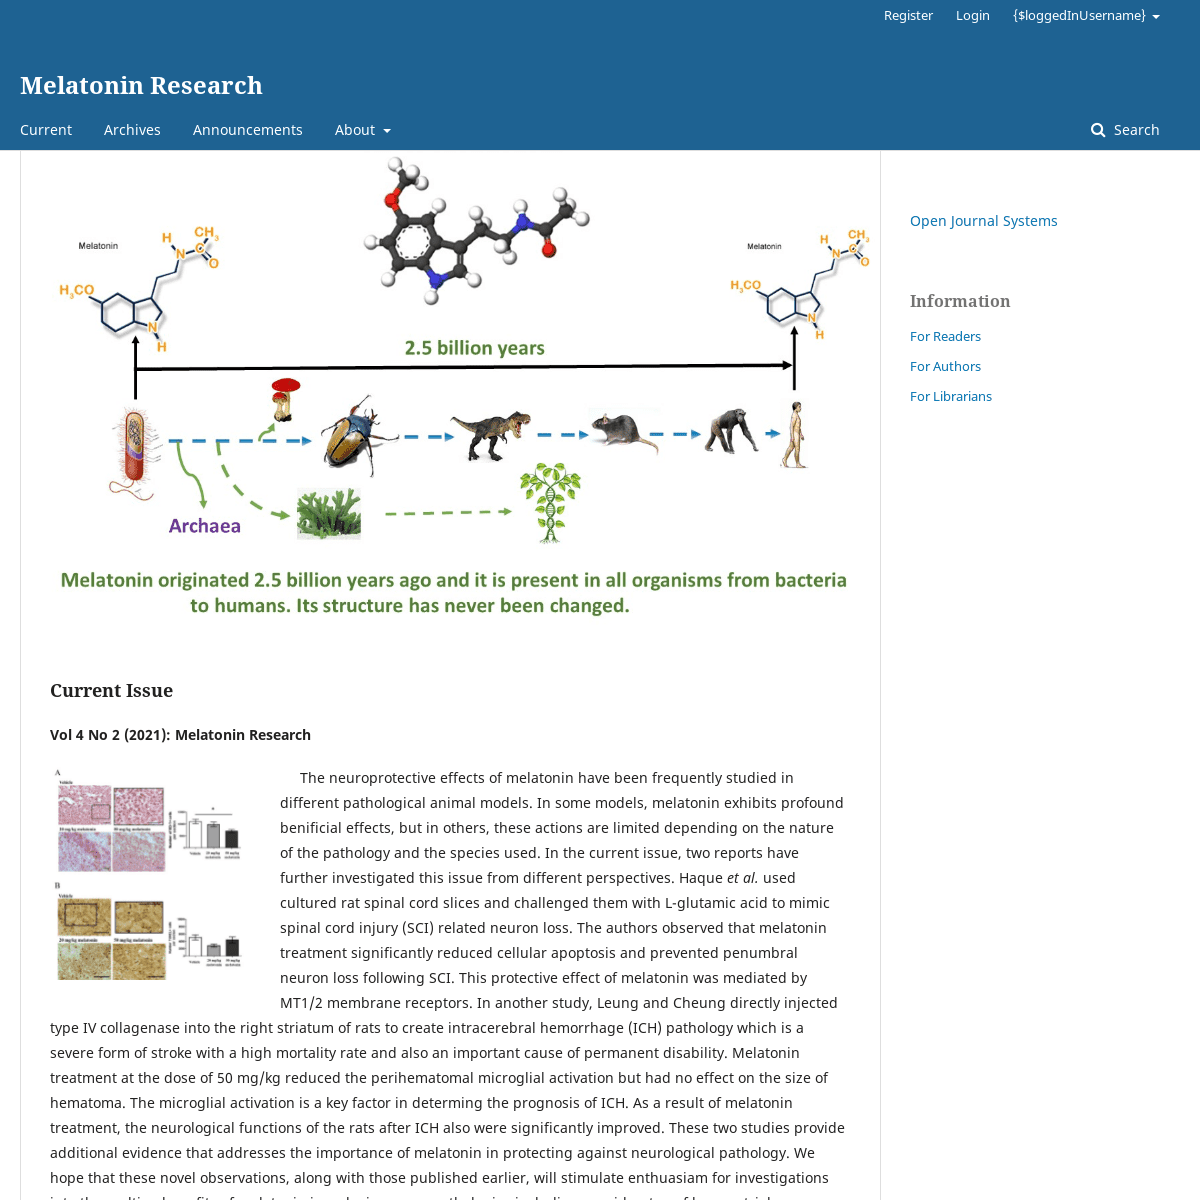 A complete backup of https://melatonin-research.net